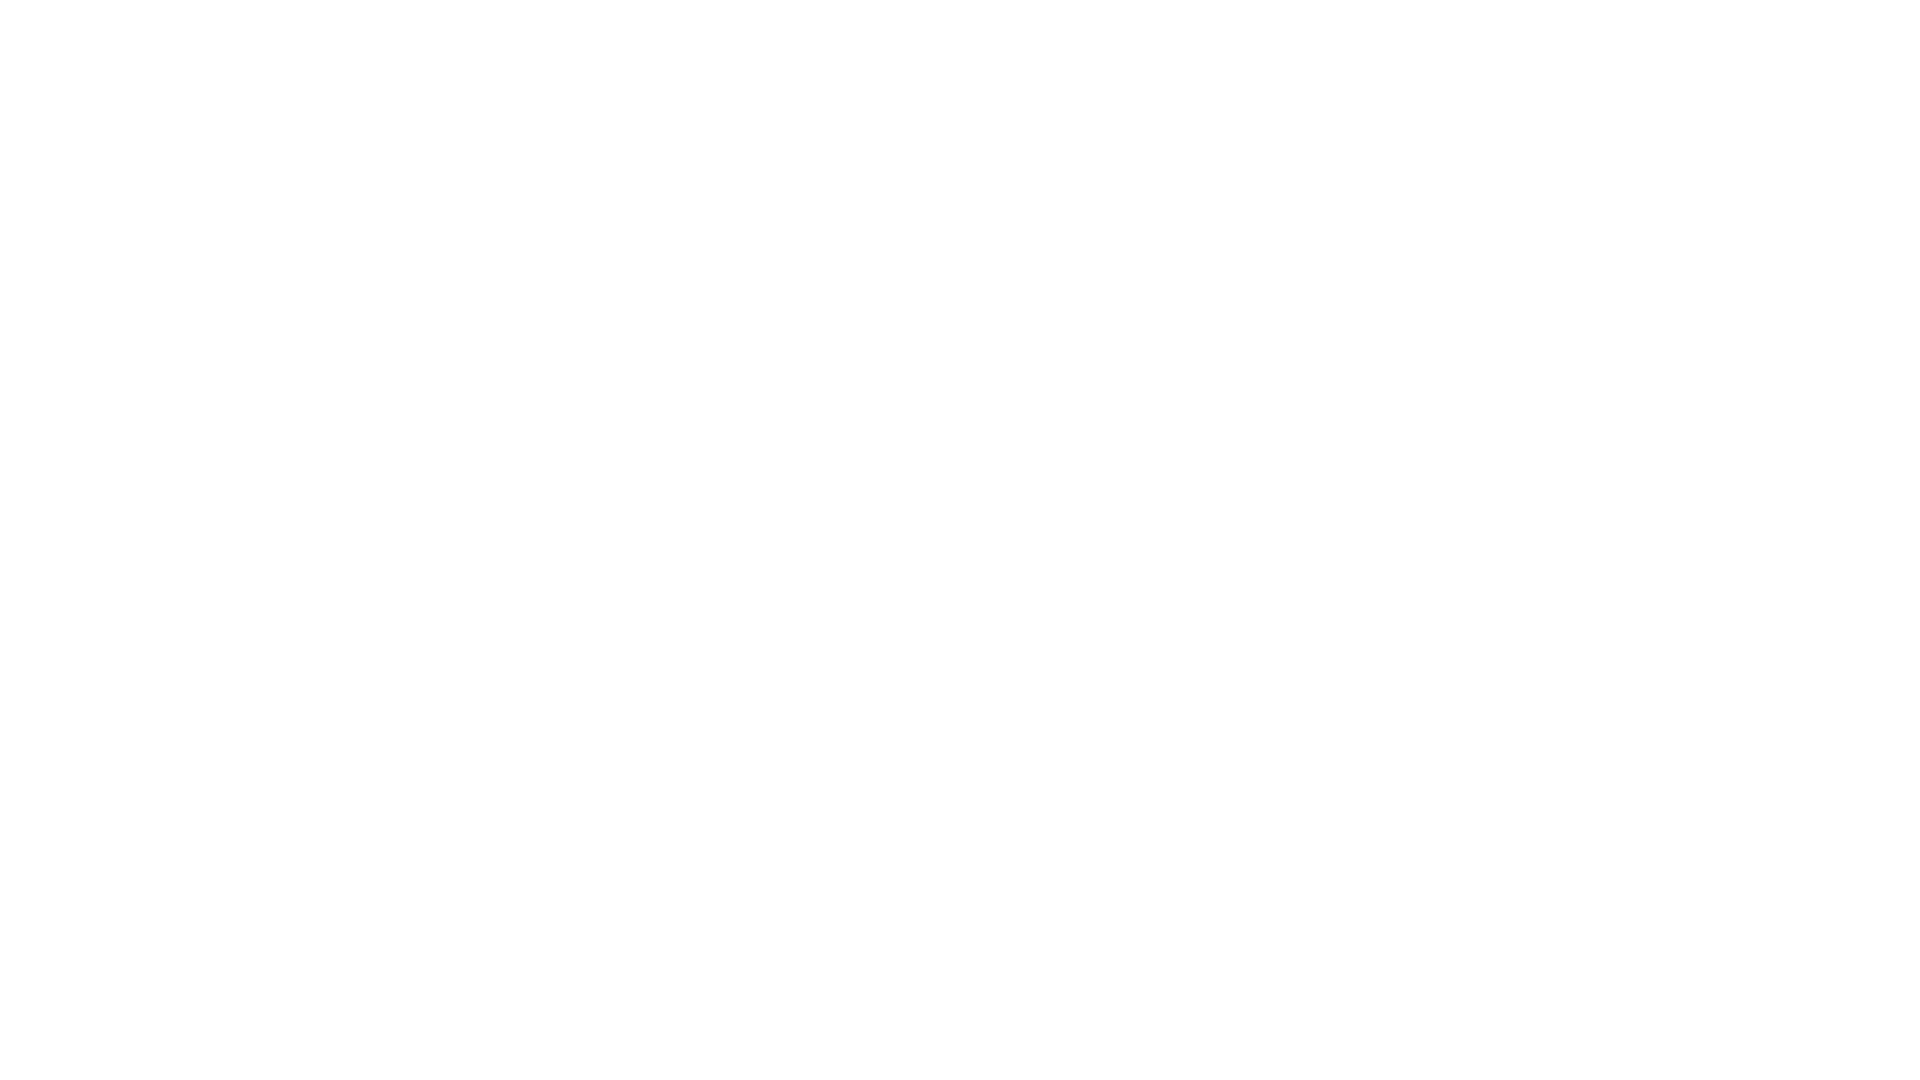 ULB